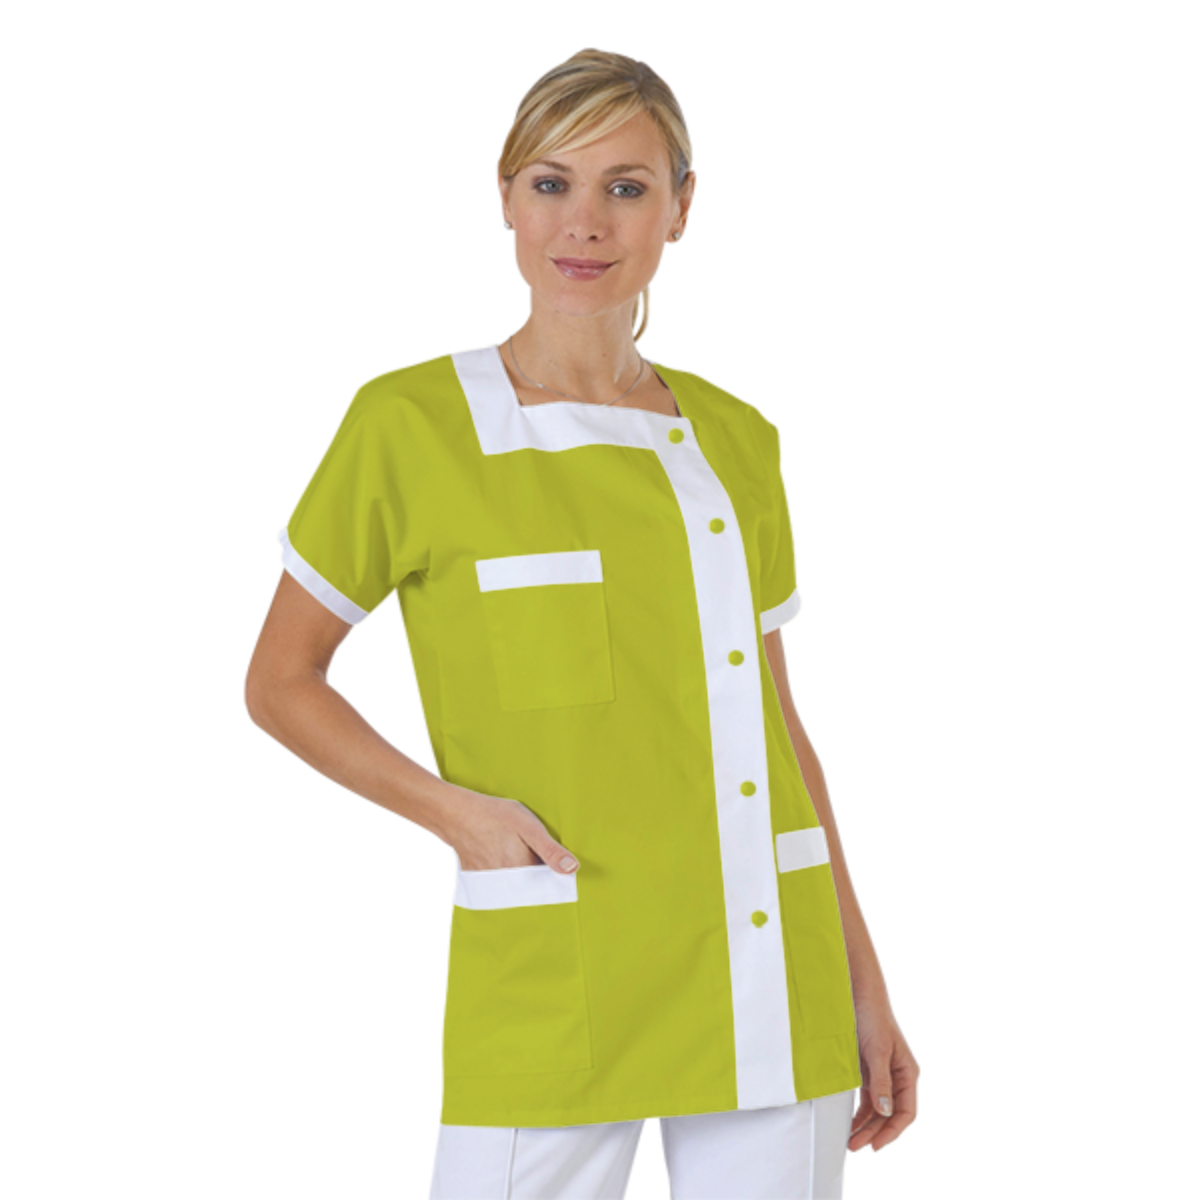 blouse-de-travail-personnalisee-tunique-medicale acheté - par Sophie - le 19-03-2021